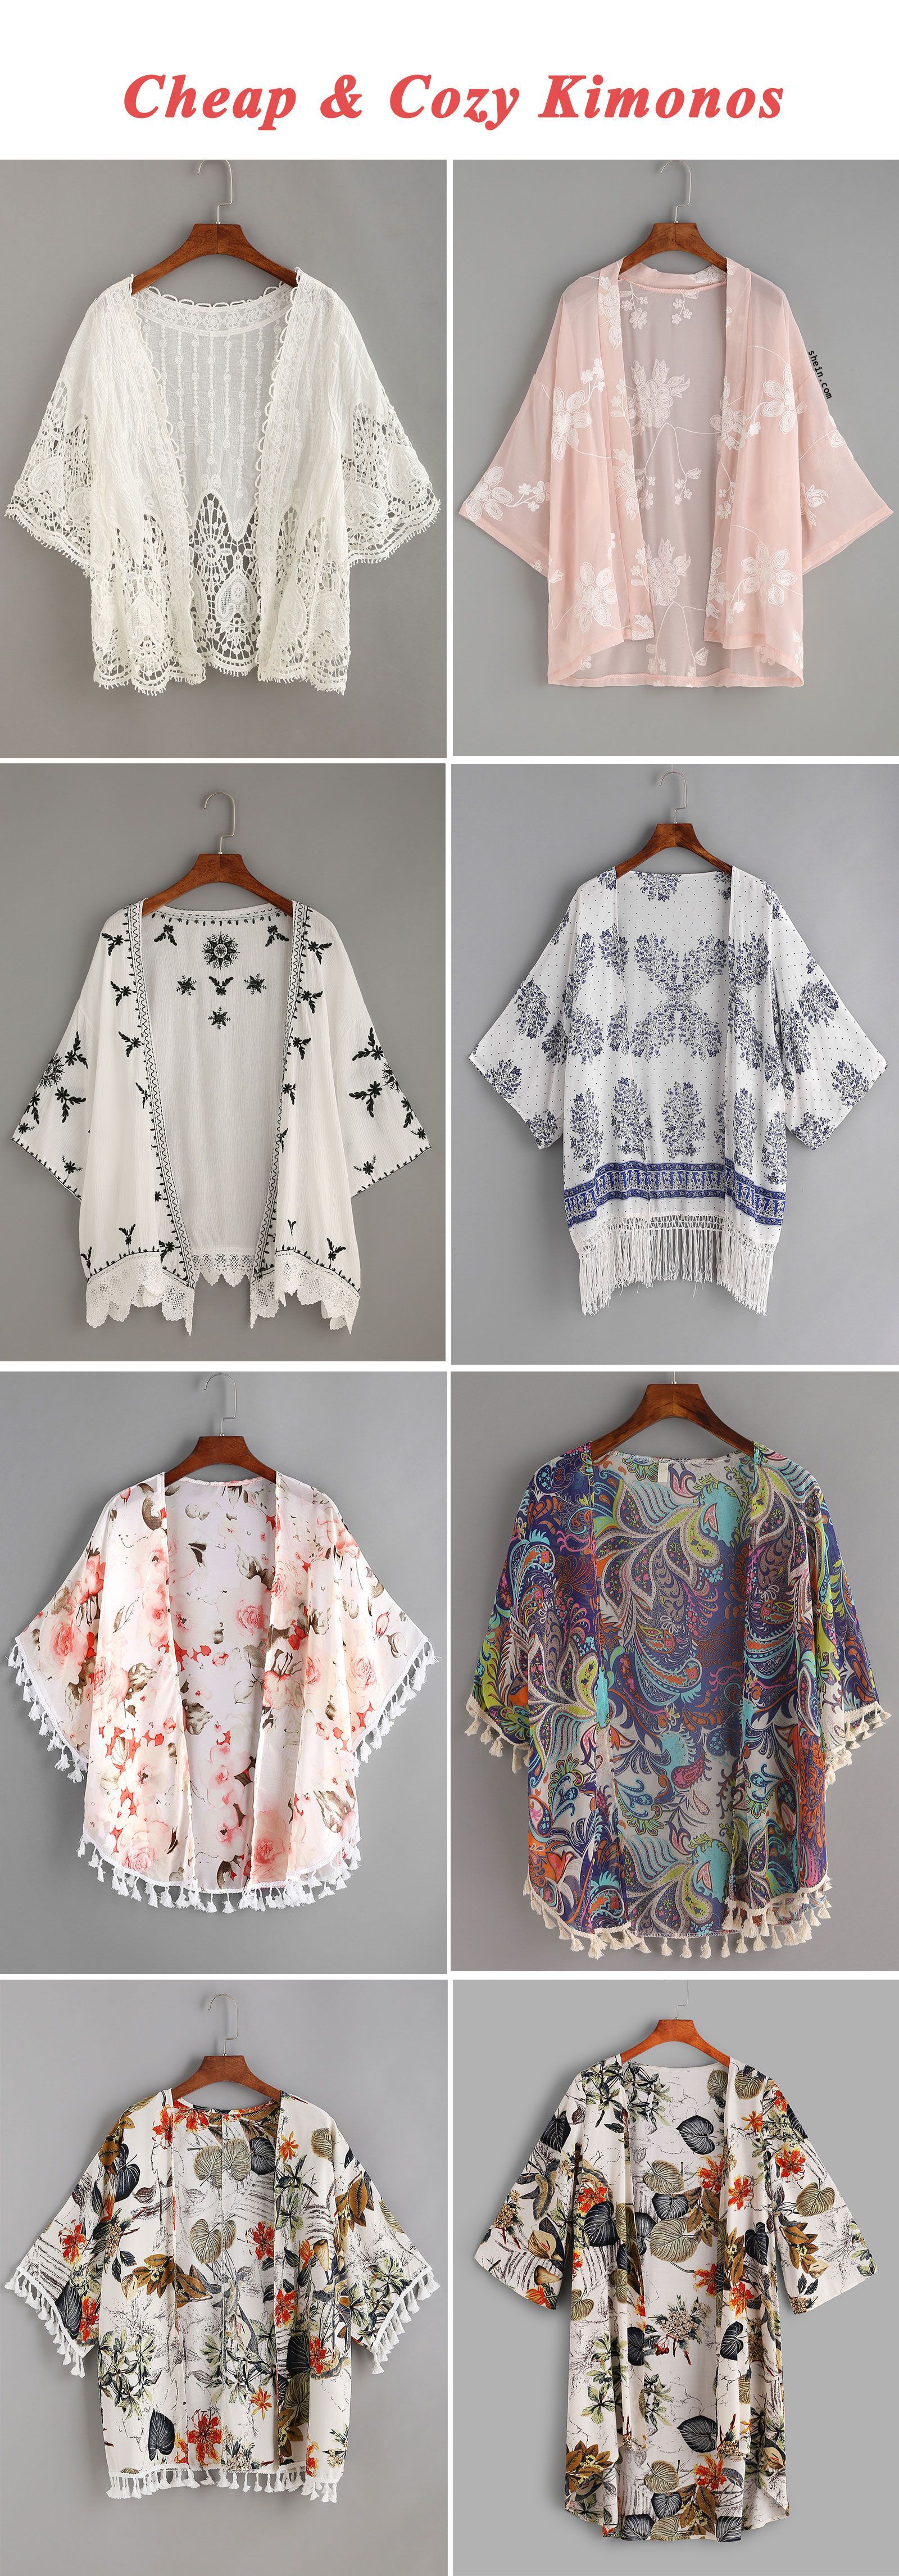 Cheap & cozy kimonos